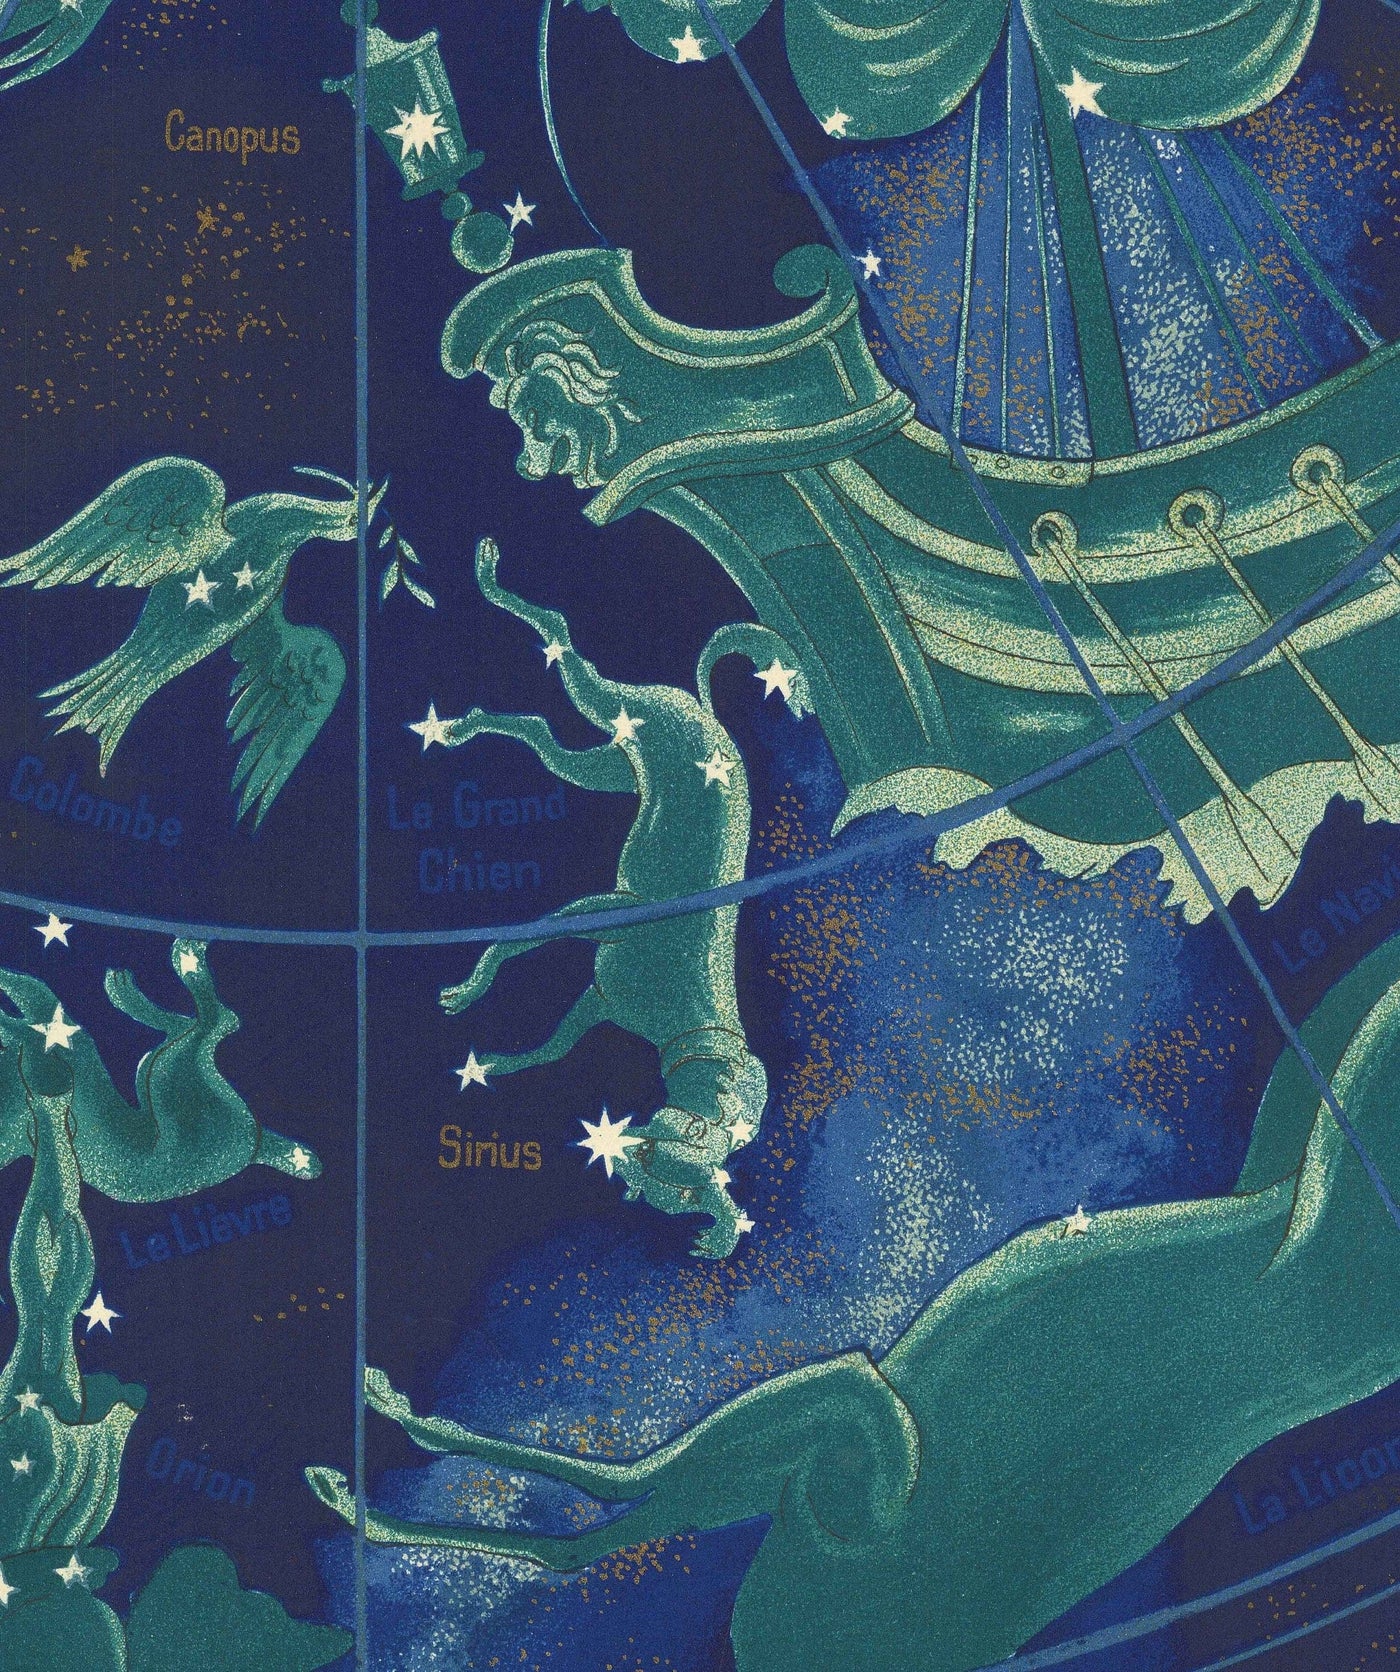 Ancienne carte du monde céleste et zodiacale d'Air France, 1959 par Bucher - Carte historique des itinéraires en avion, Constellations